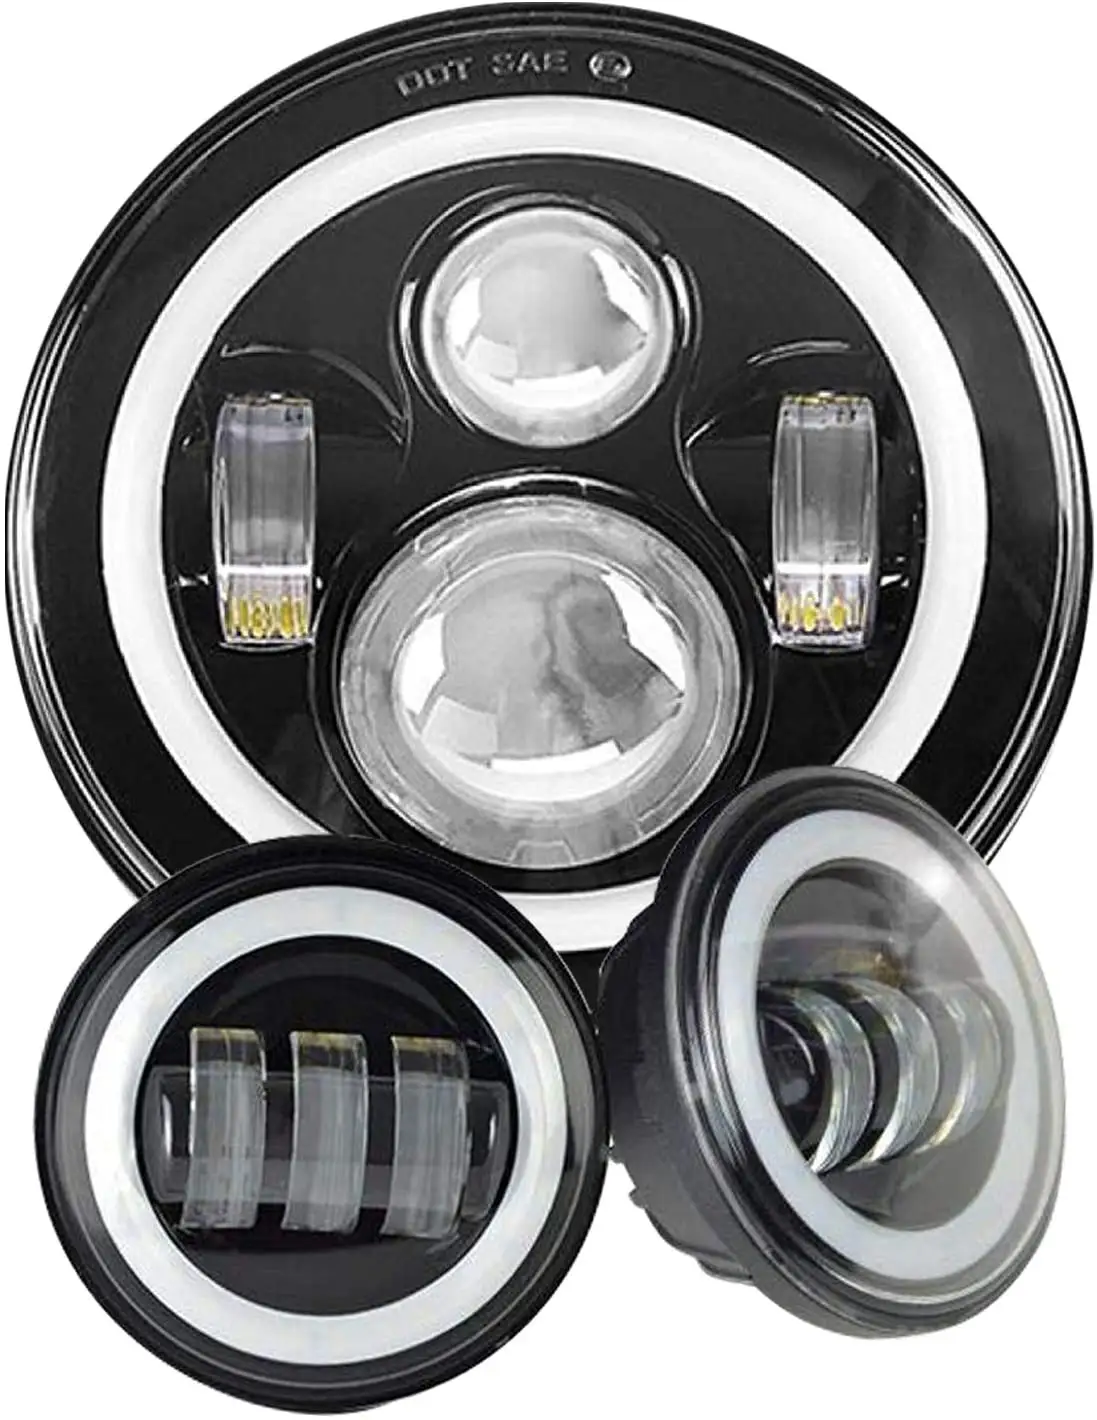 7 "LED far Ultra sınırlı 4-1/2 LED geçiyor 4.5 sis aydınlatma montaj braketi yüzük siyah